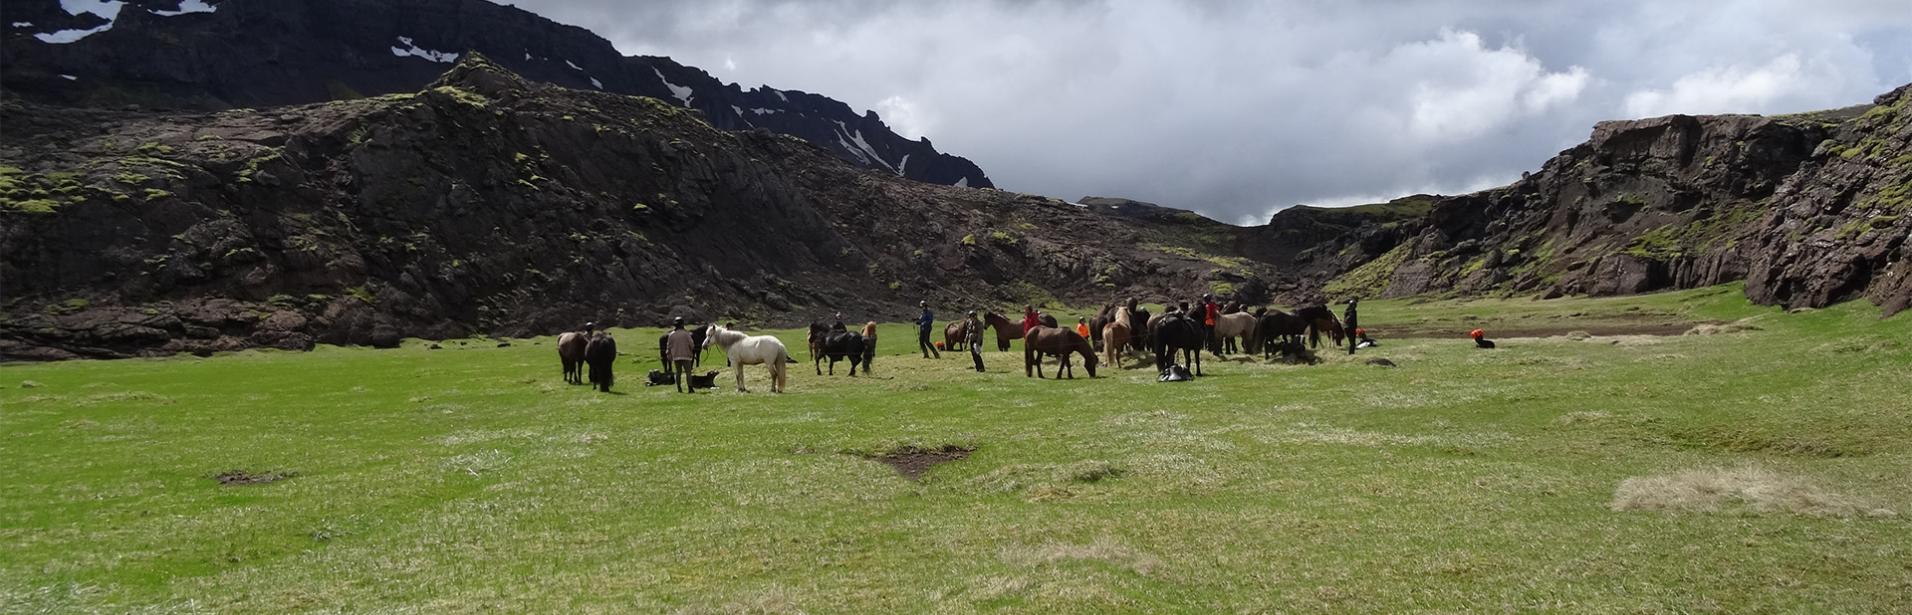 Islandshäst, häst, hästar, ridning, island